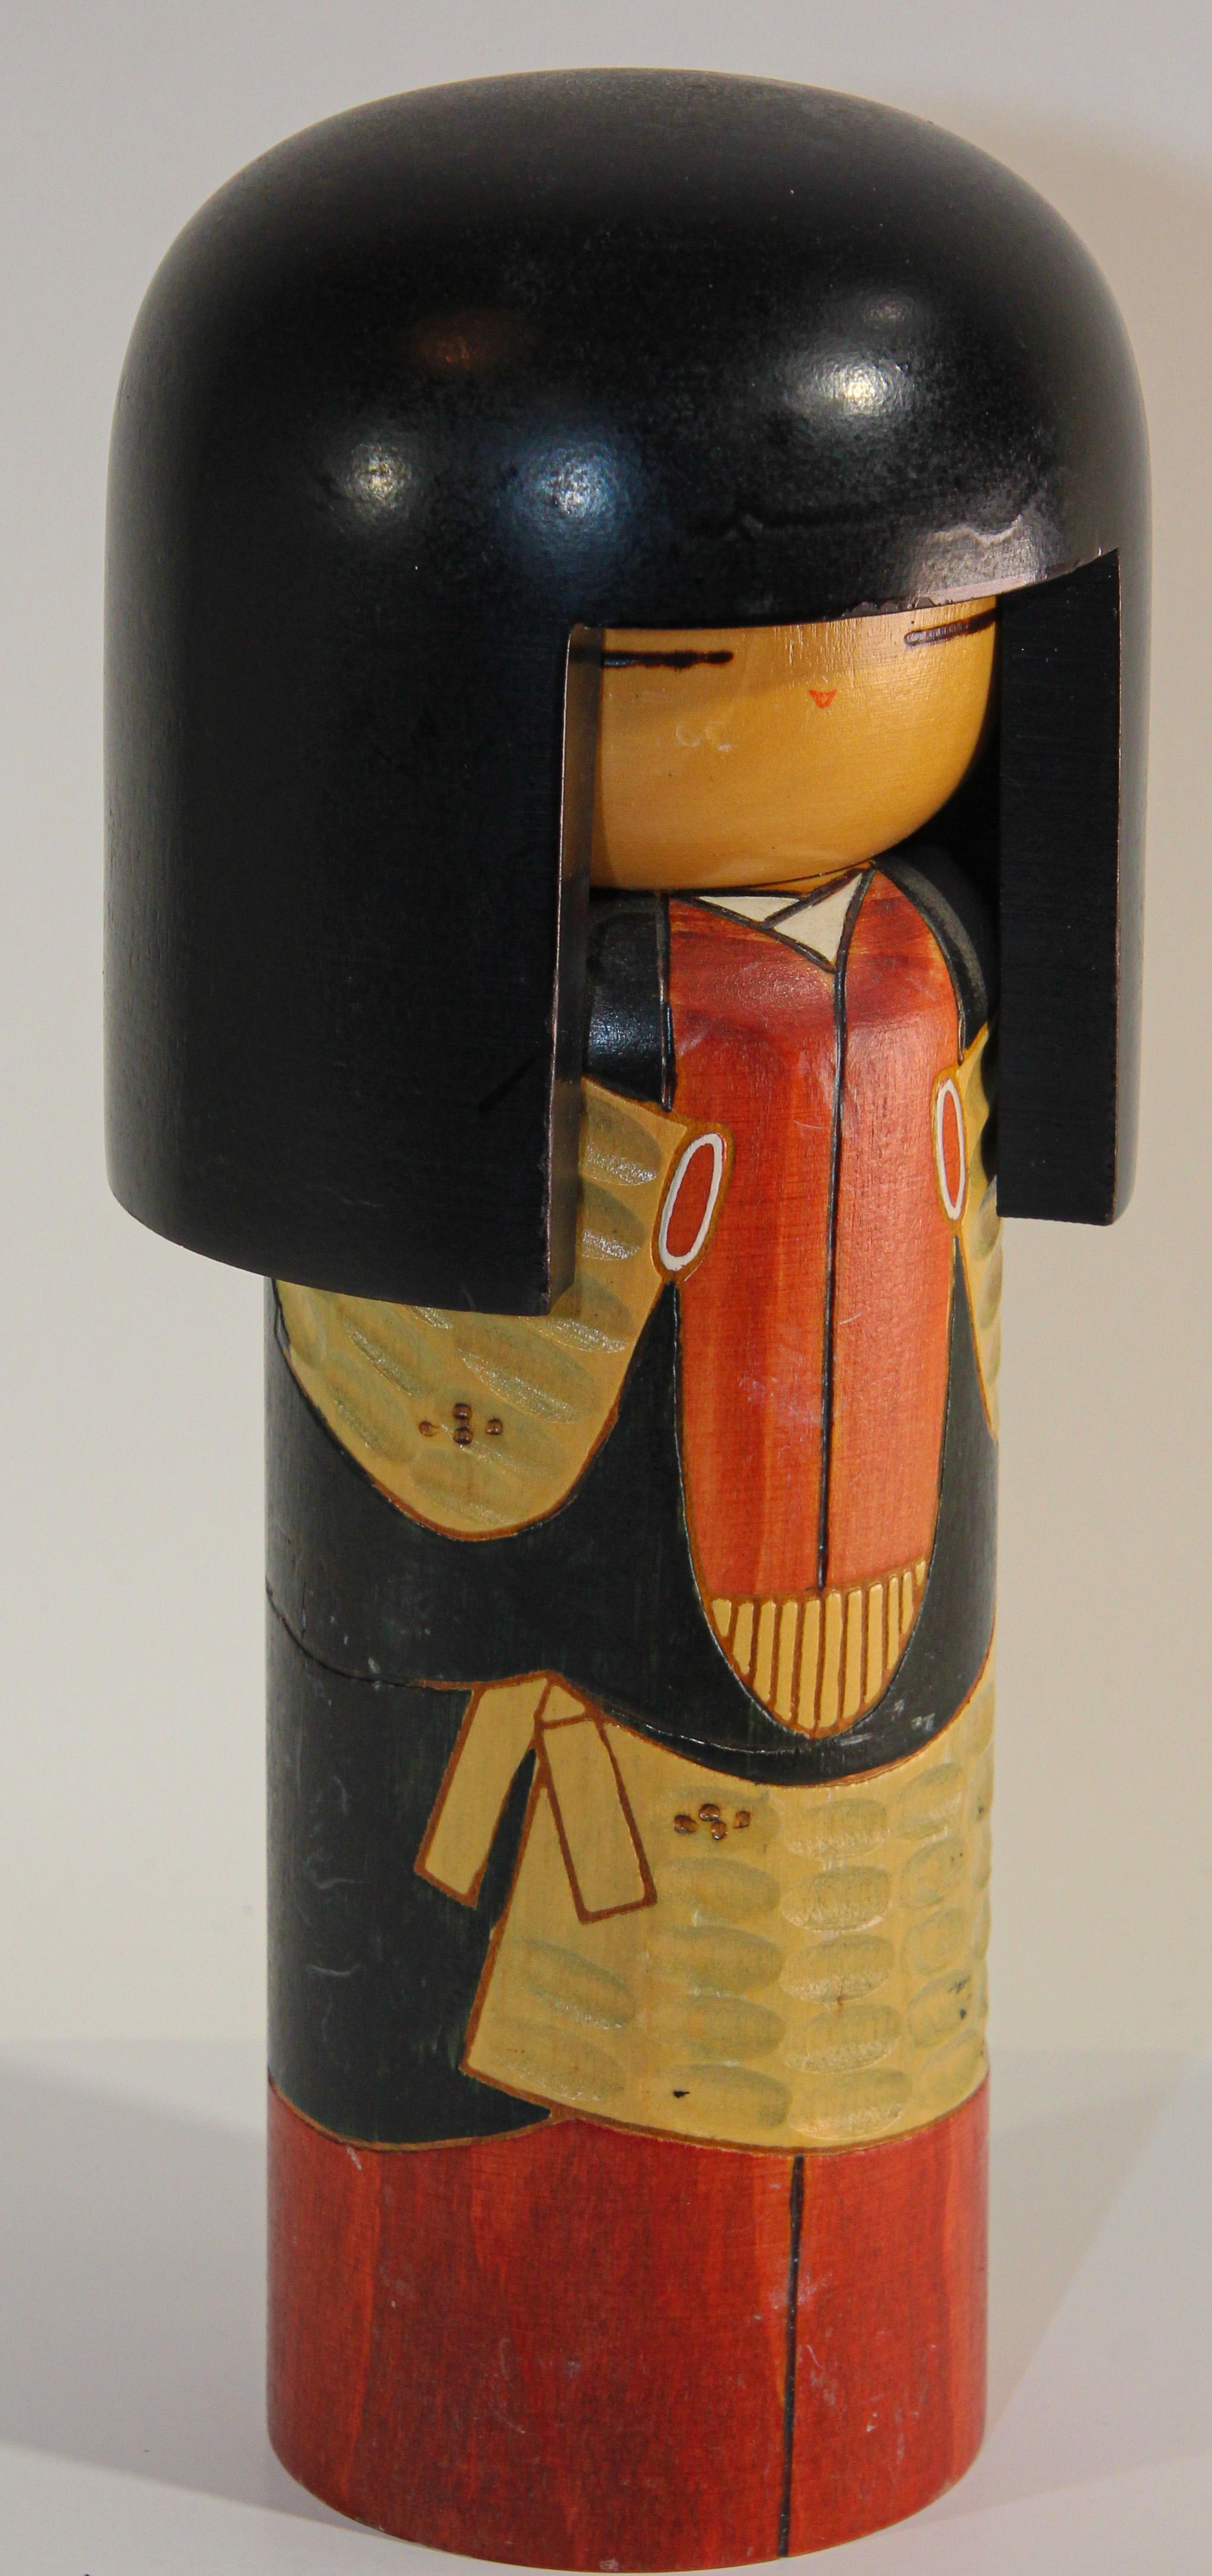 Kokeshi oder Kokashi-Puppe, handgefertigt von japanischen Kunsthandwerkern aus Holz. 
Die Puppen haben einen einfachen Koffer als Körper und einen vergrößerten Kopf. 
Ein Merkmal der Kokeshi-Puppen ist ihr Mangel an Armen und Beinen.
Nachfolgend